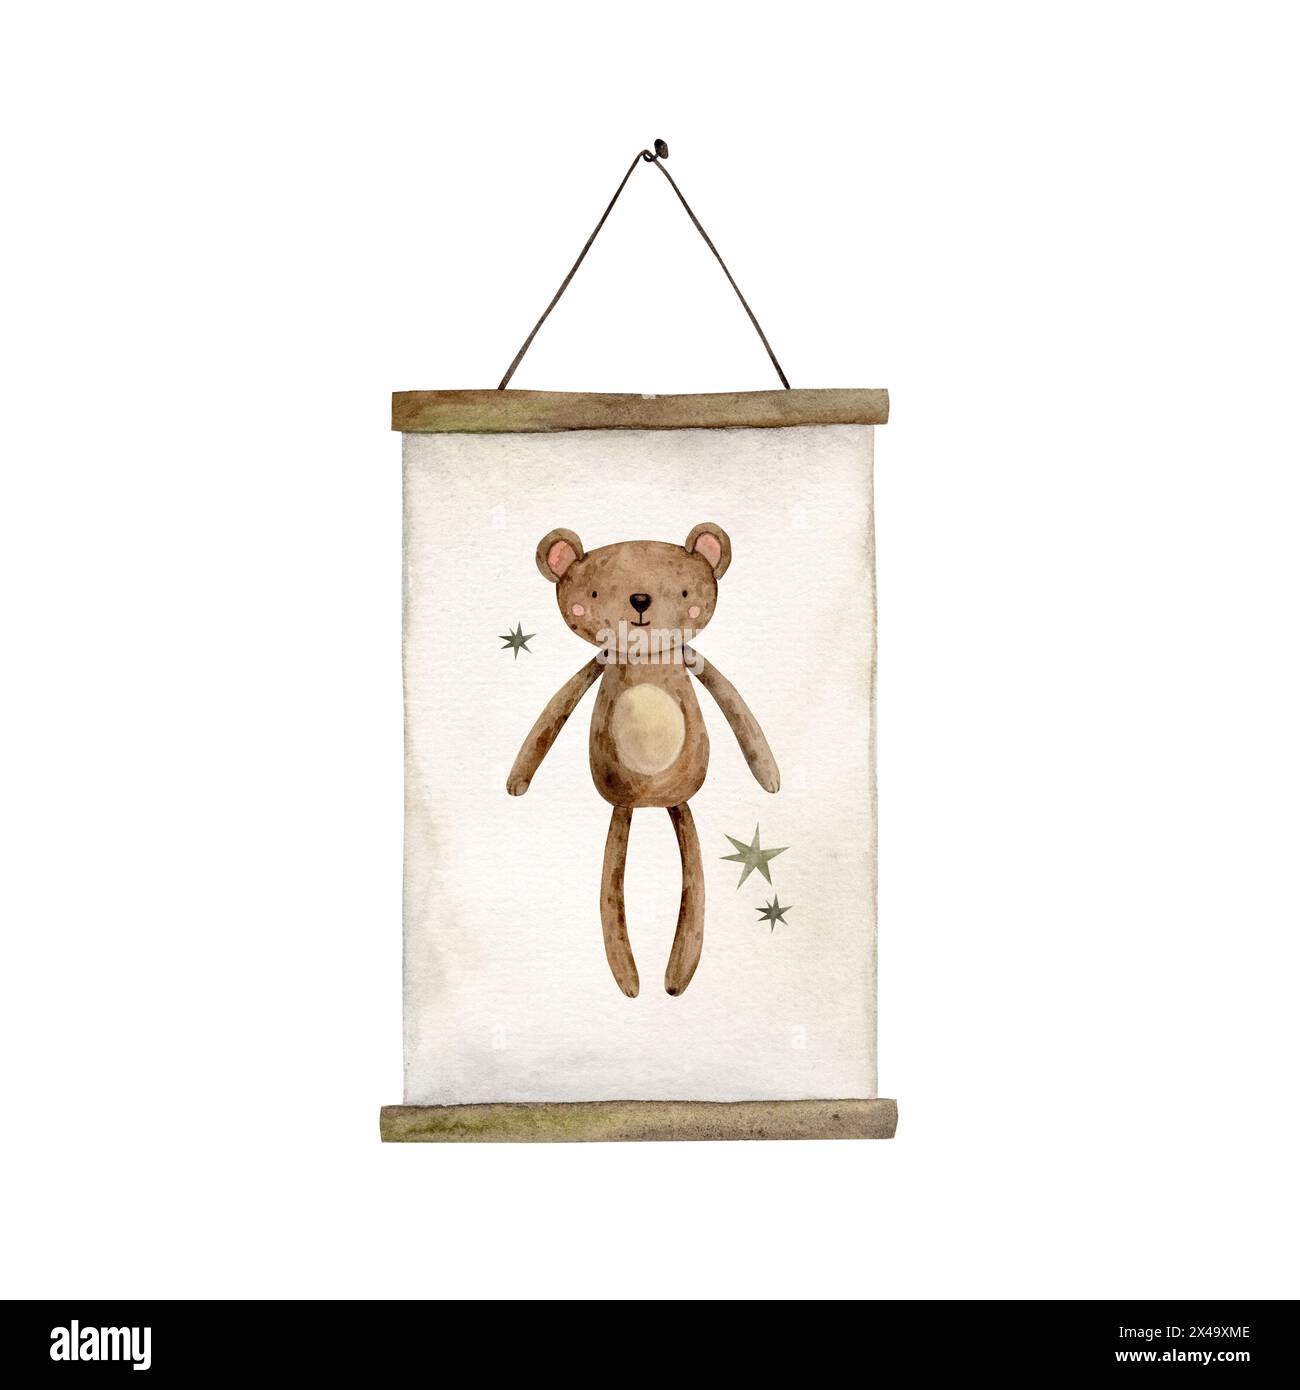 Weißes Poster in Holzrahmen mit einem Muster eines Braunbären und Sternen. Das Poster hängt an der Wand. Isolierte Aquarellillustration für Kinder Stockfoto